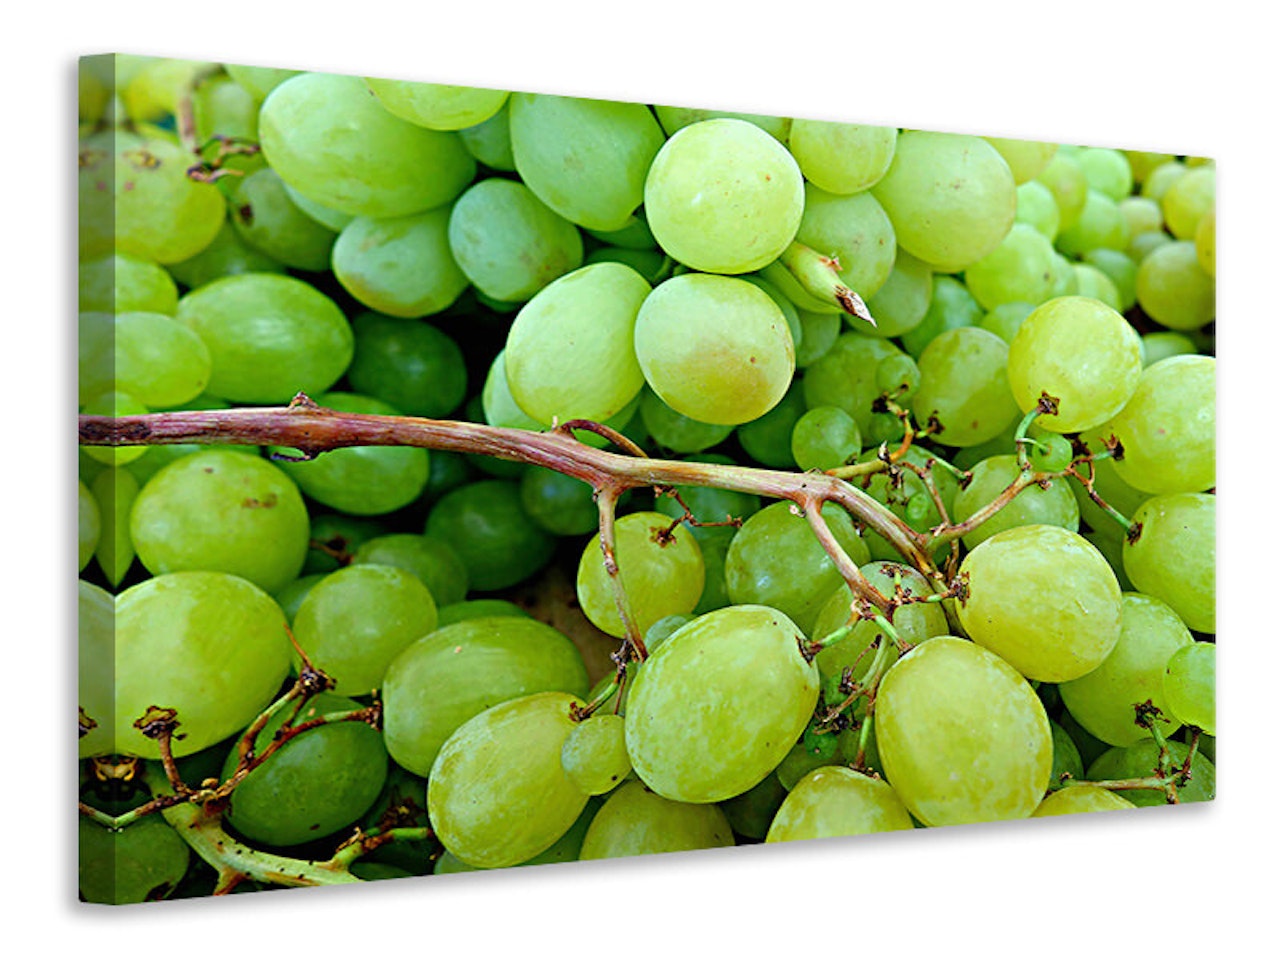 Ljuddämpande tavla - green grapes